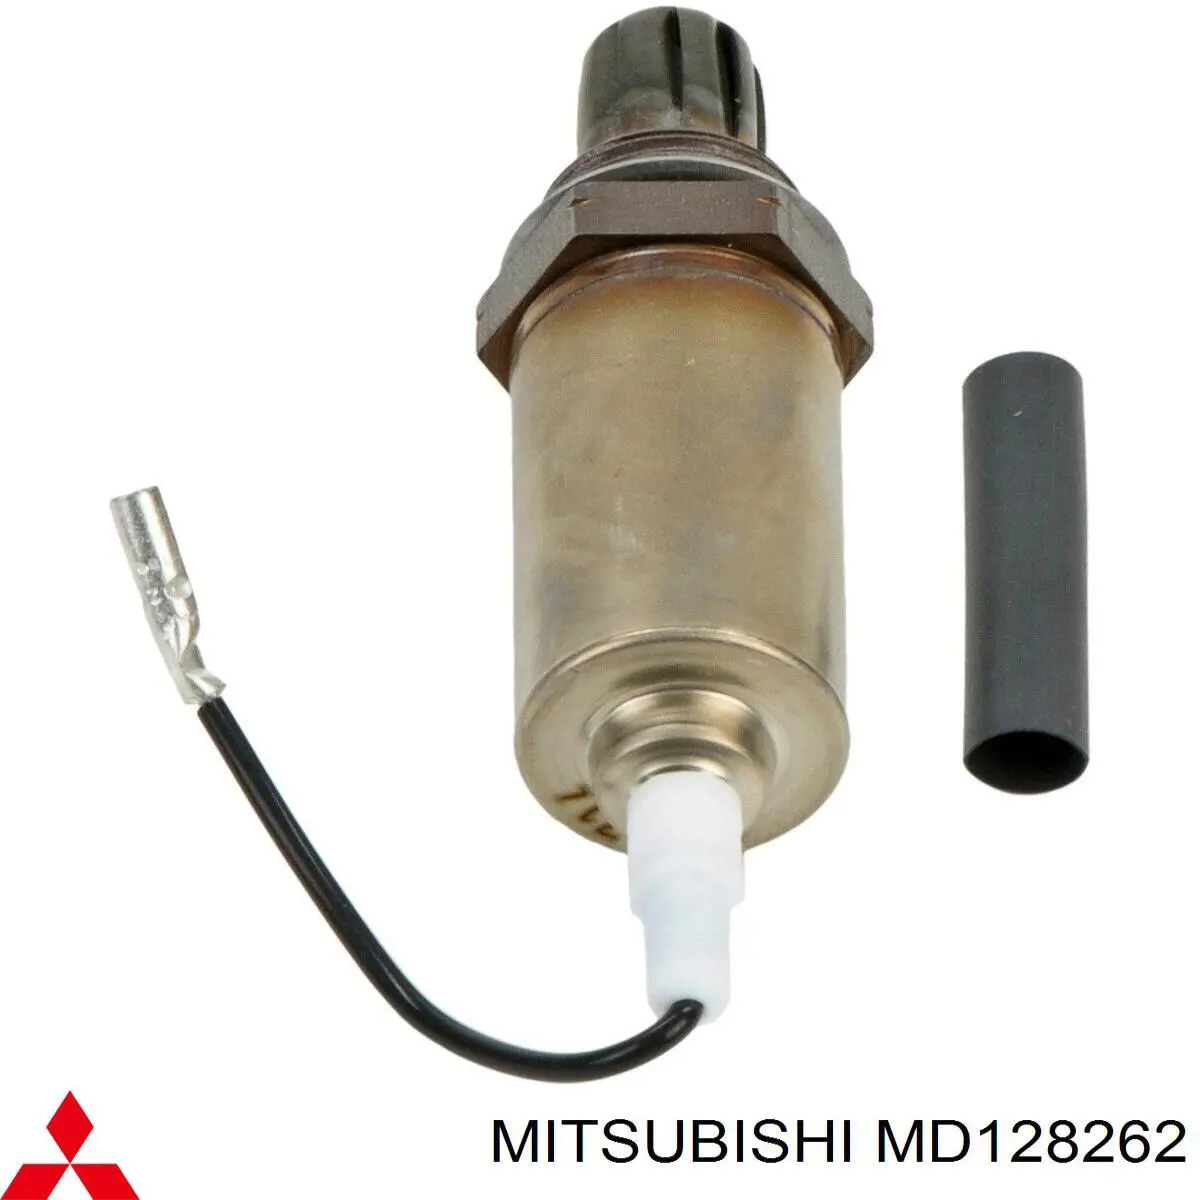 MD128262 Mitsubishi 